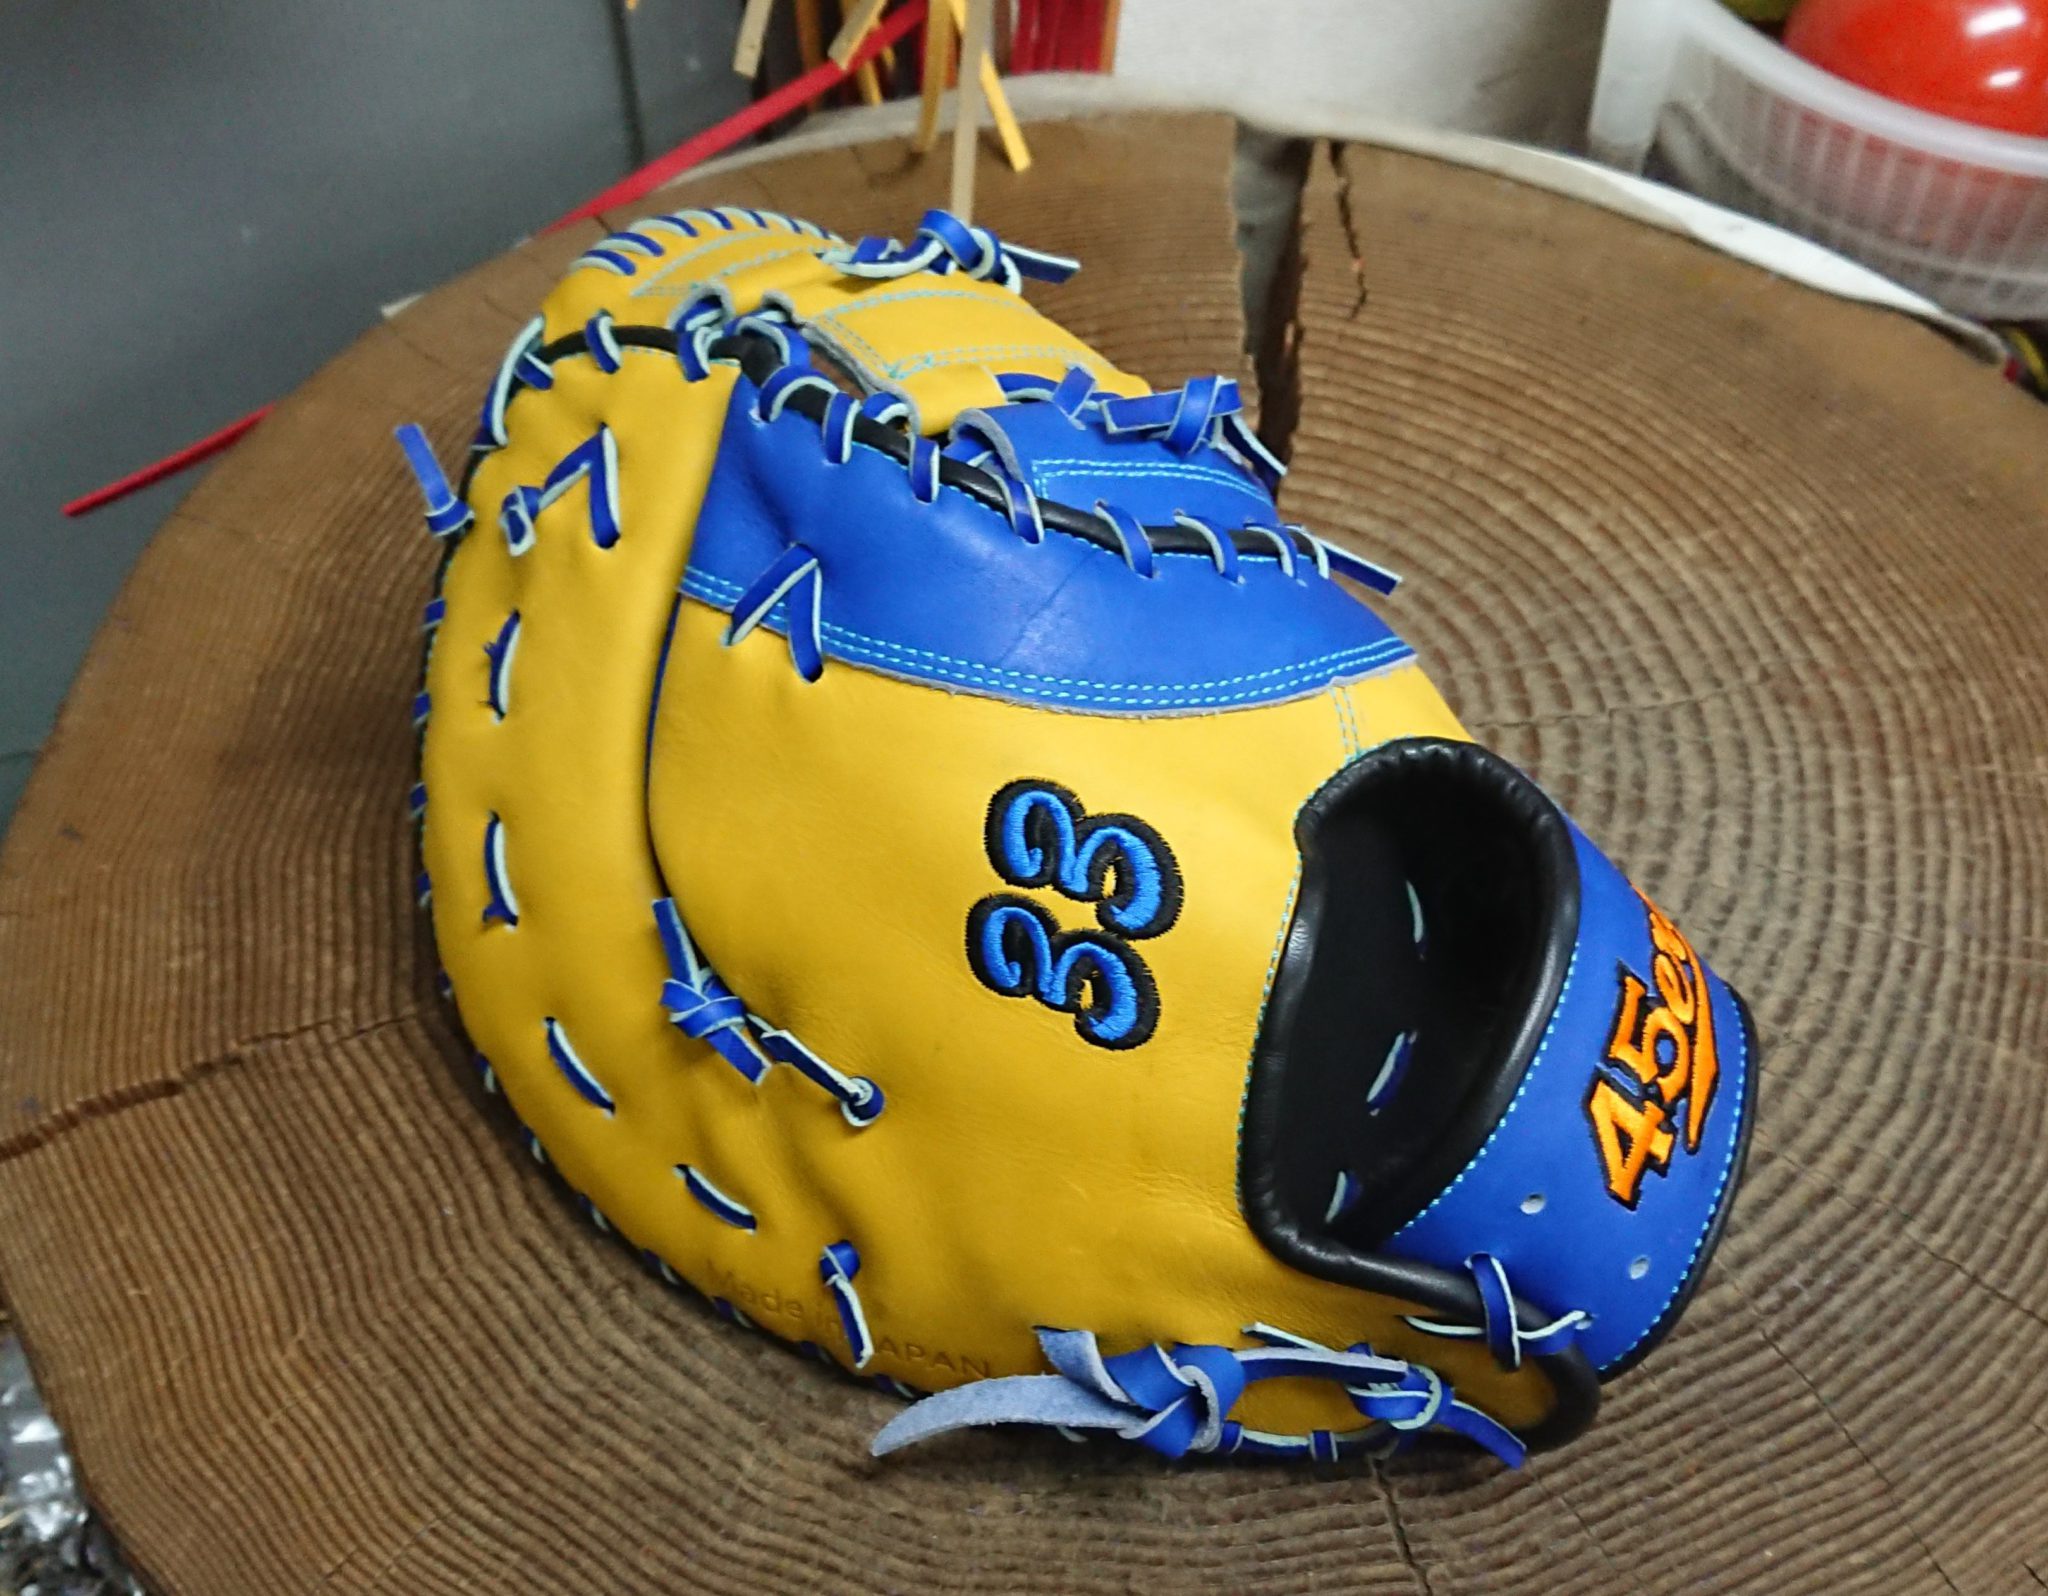 SAEKI 軟式 | 高崎の野球用品専門店 カミスポーツ